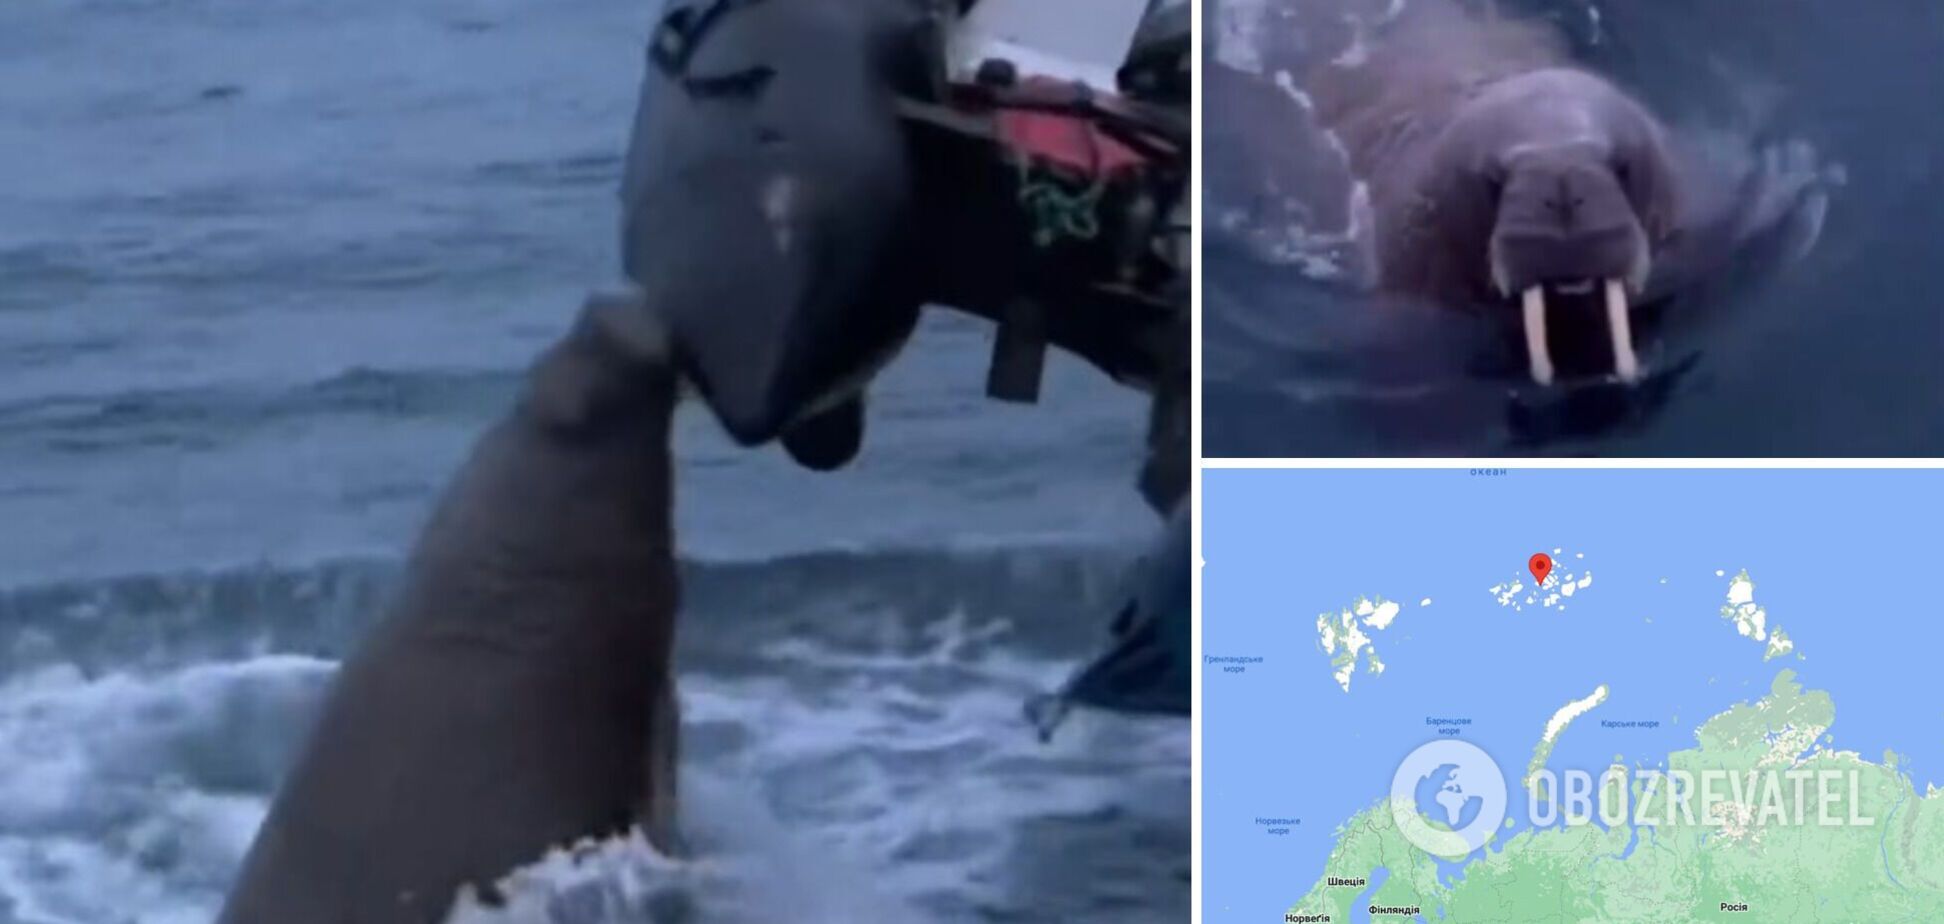 'Захищала свою територію': моржиха напала на човен росіян у Північному Льодовитому океані. Відео